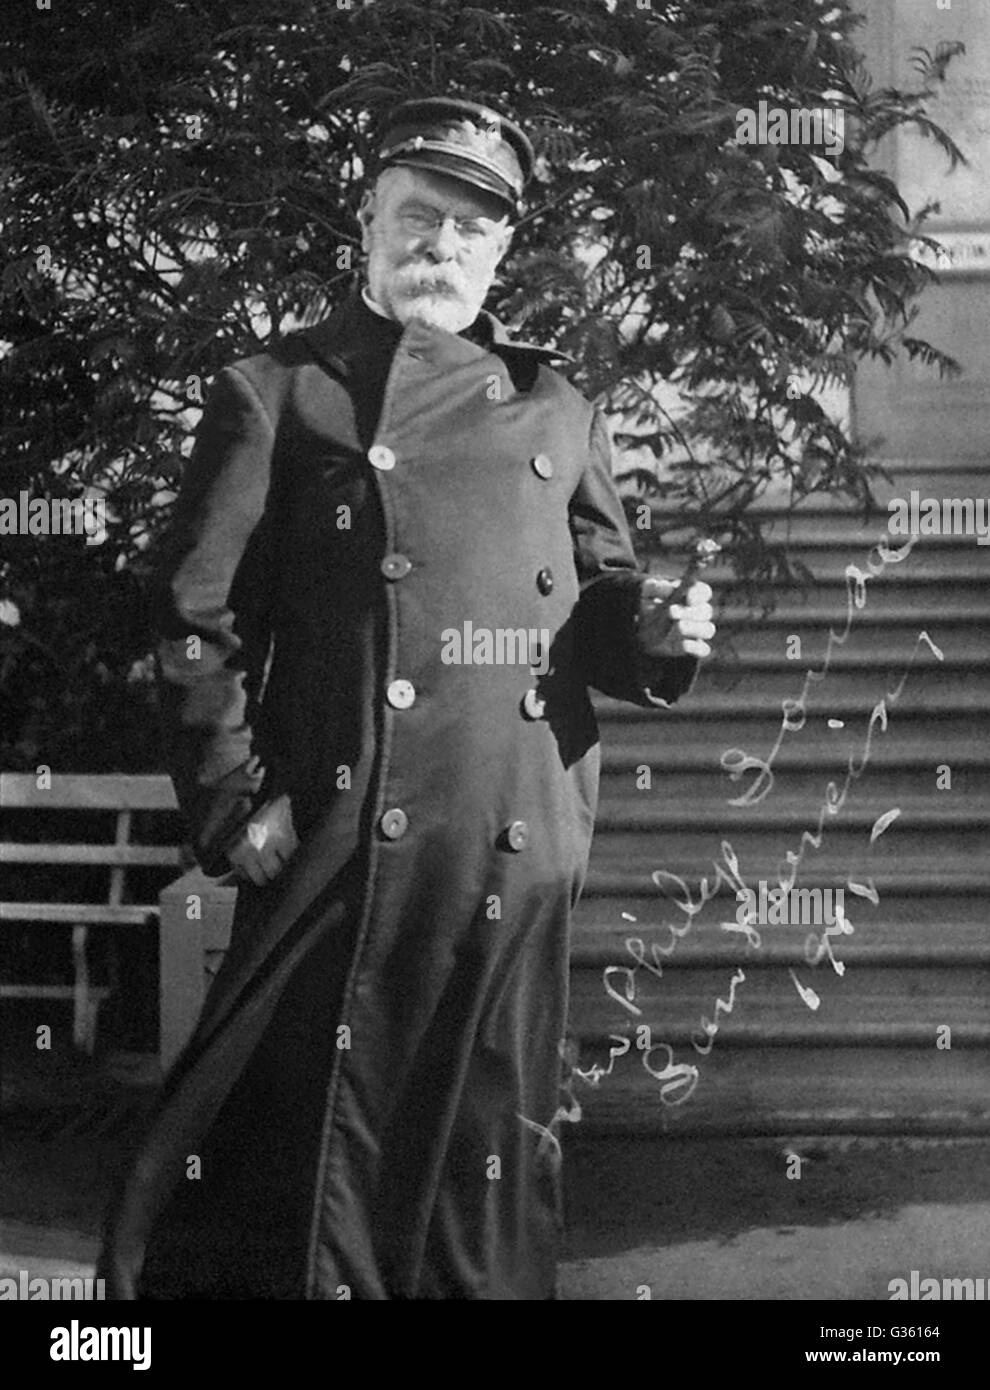 Sousa, dem legendären Komponisten und Dirigenten des militärisch-patriotischen marschiert an der San Francisco Panama-Pacific International Exposition in 1915. Stockfoto